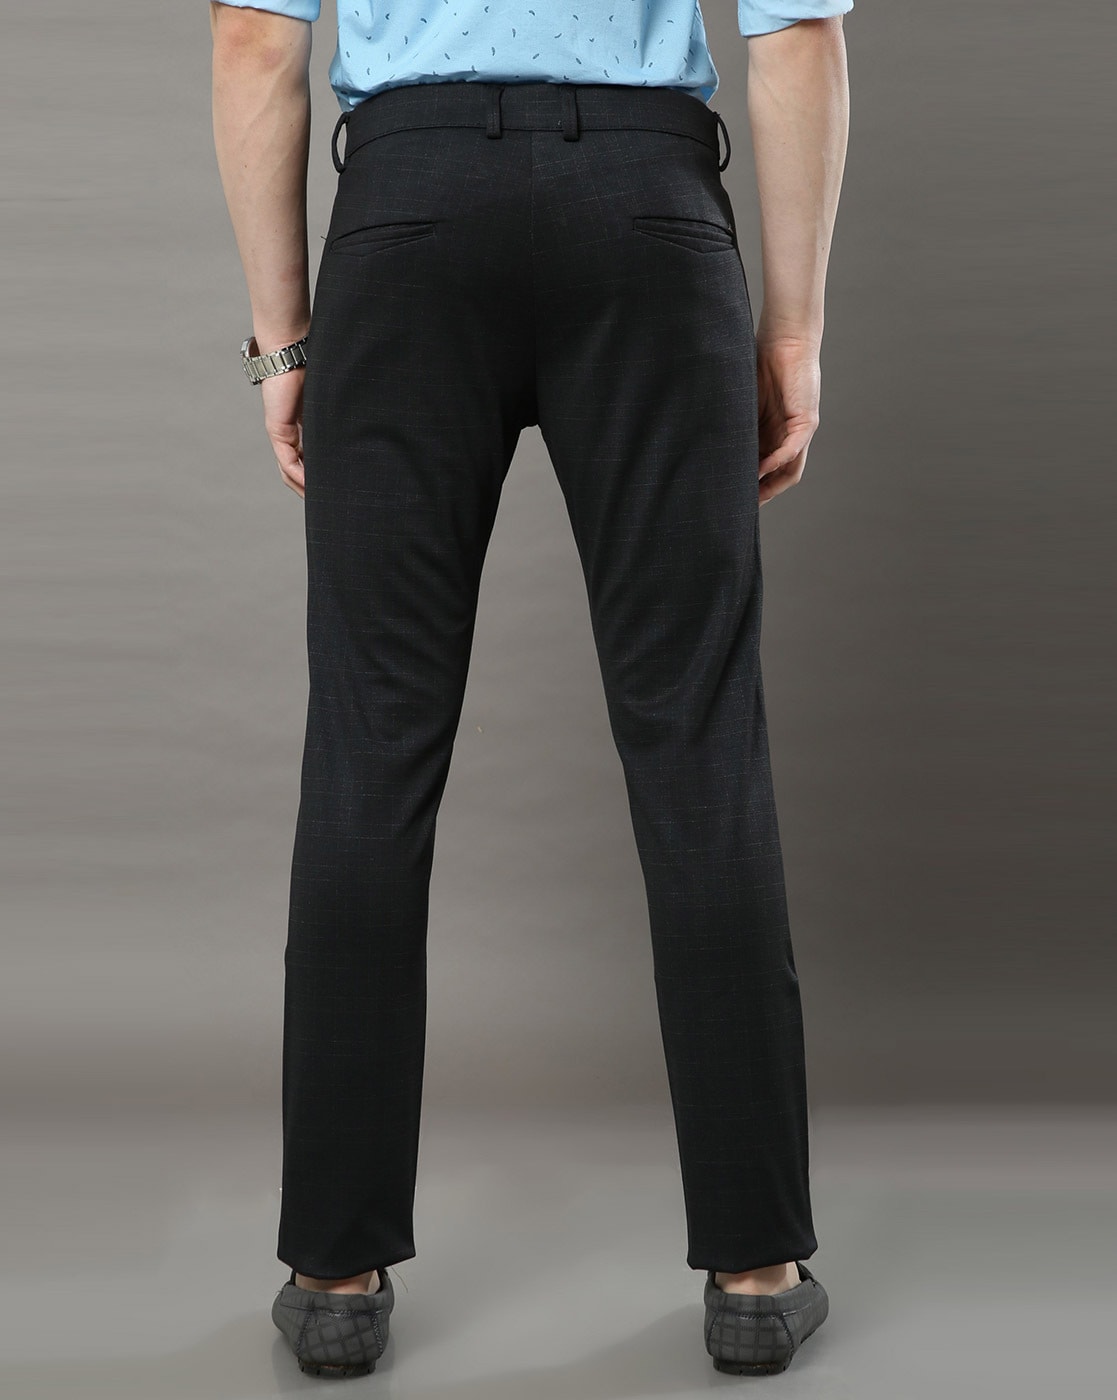 Black Multi Floral Pants - Wide Leg Pants - Casual Floral Pants - Lulus